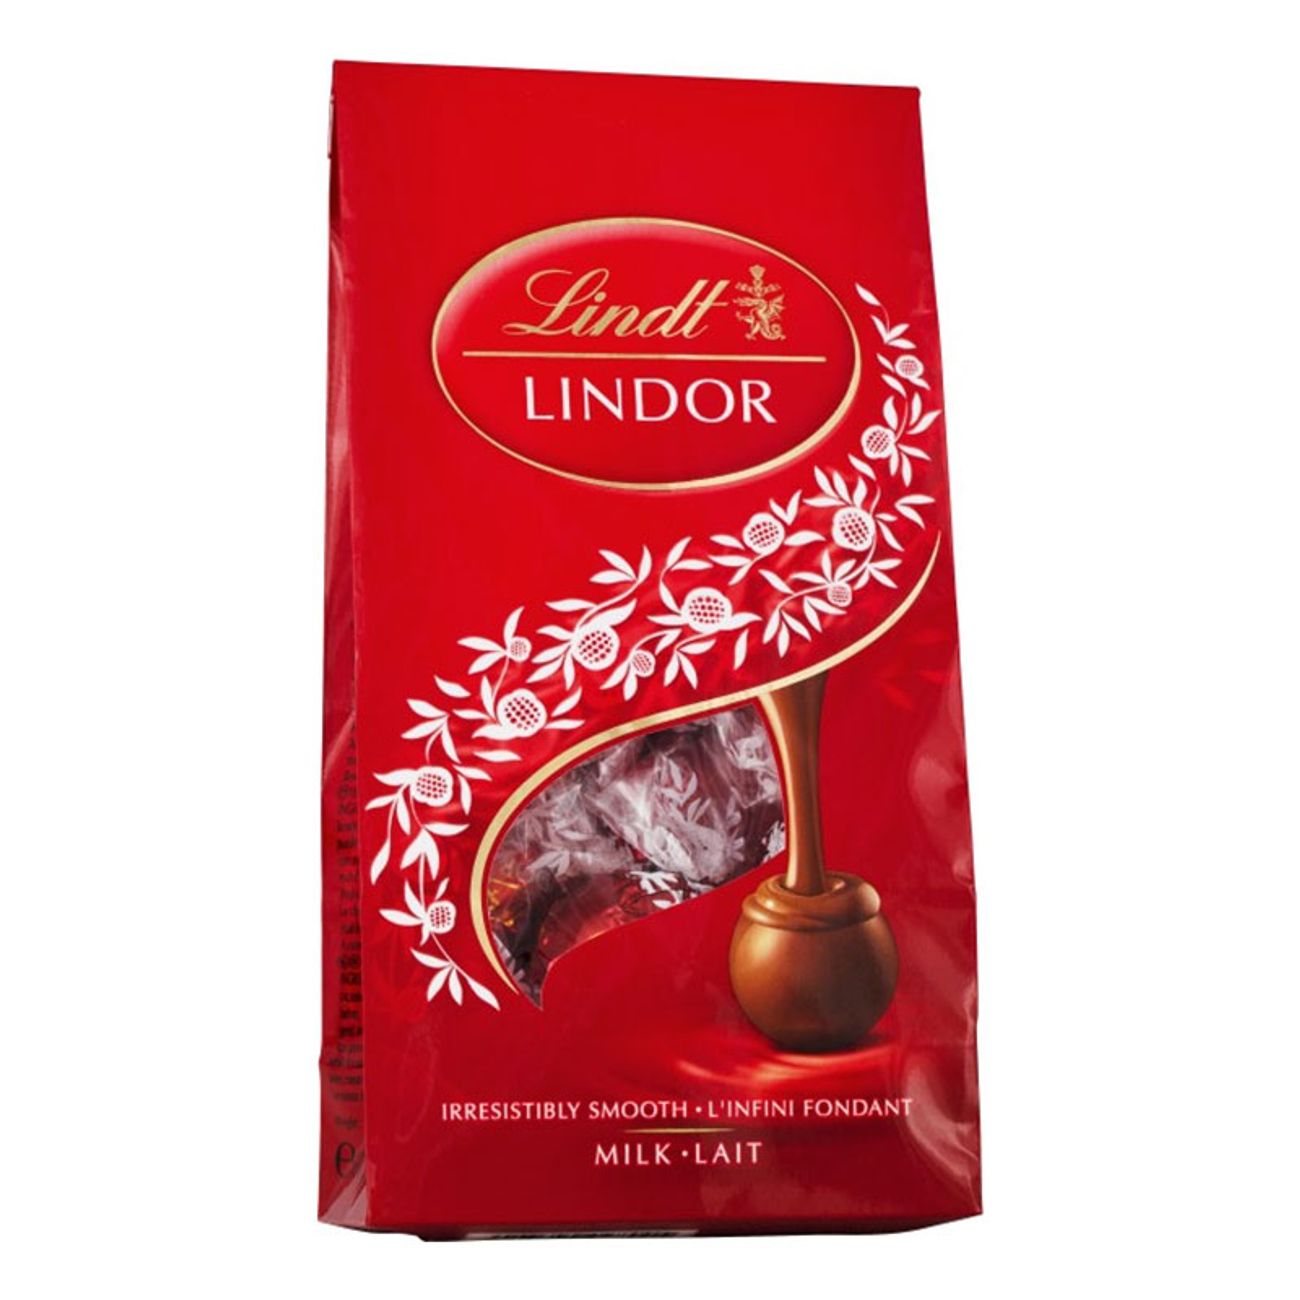 lindt-lindor-mjolkchoklad-praliner-80276-1